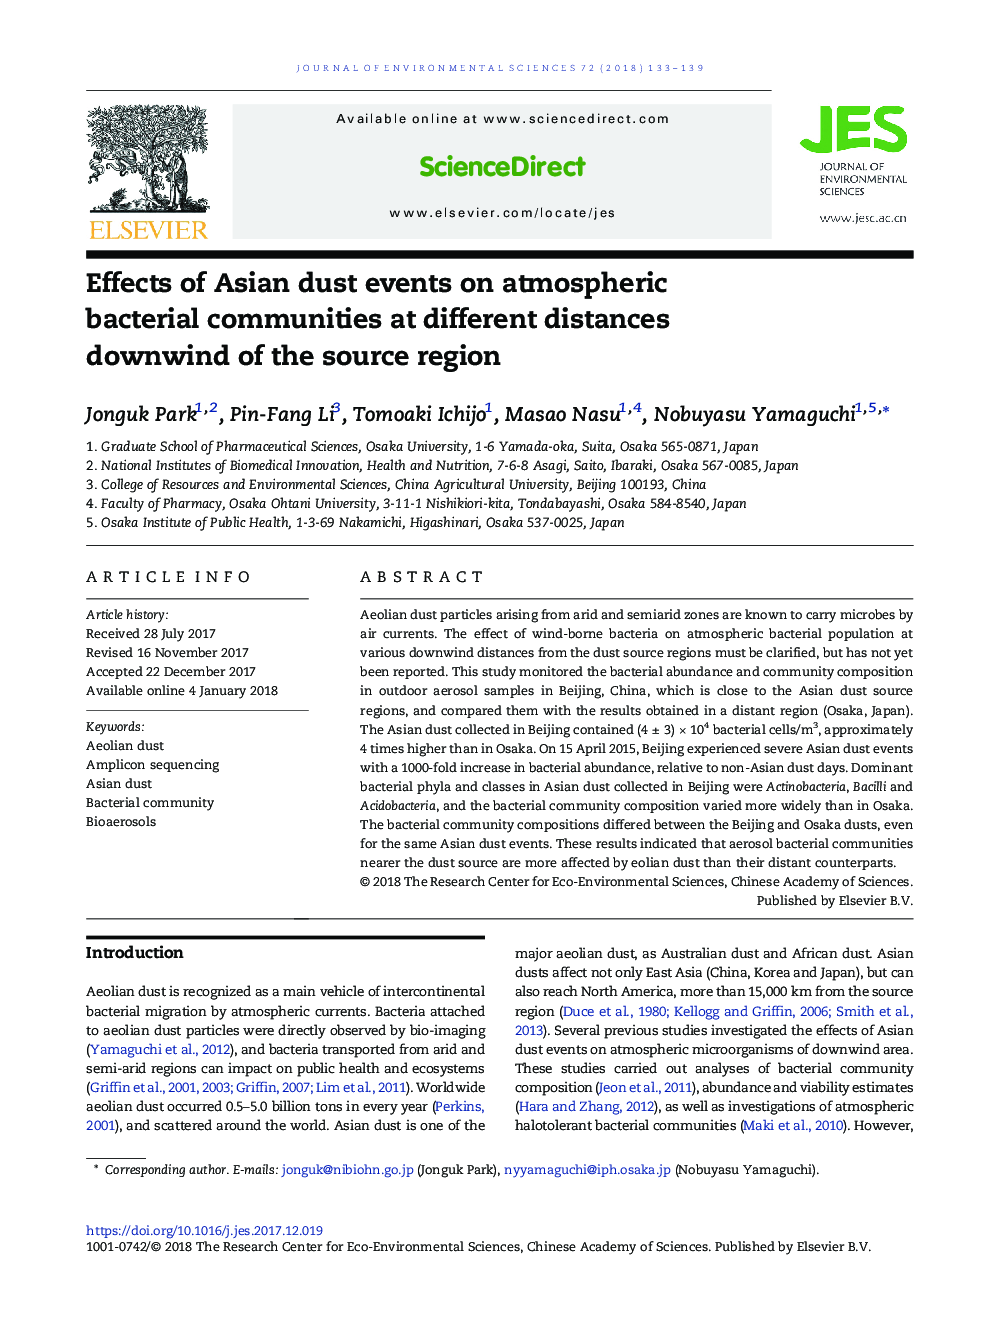 اثرات حوادث گرد و غبار آسیایی بر جوامع باکتری جو در فاصله های پایین در ناحیه منبع